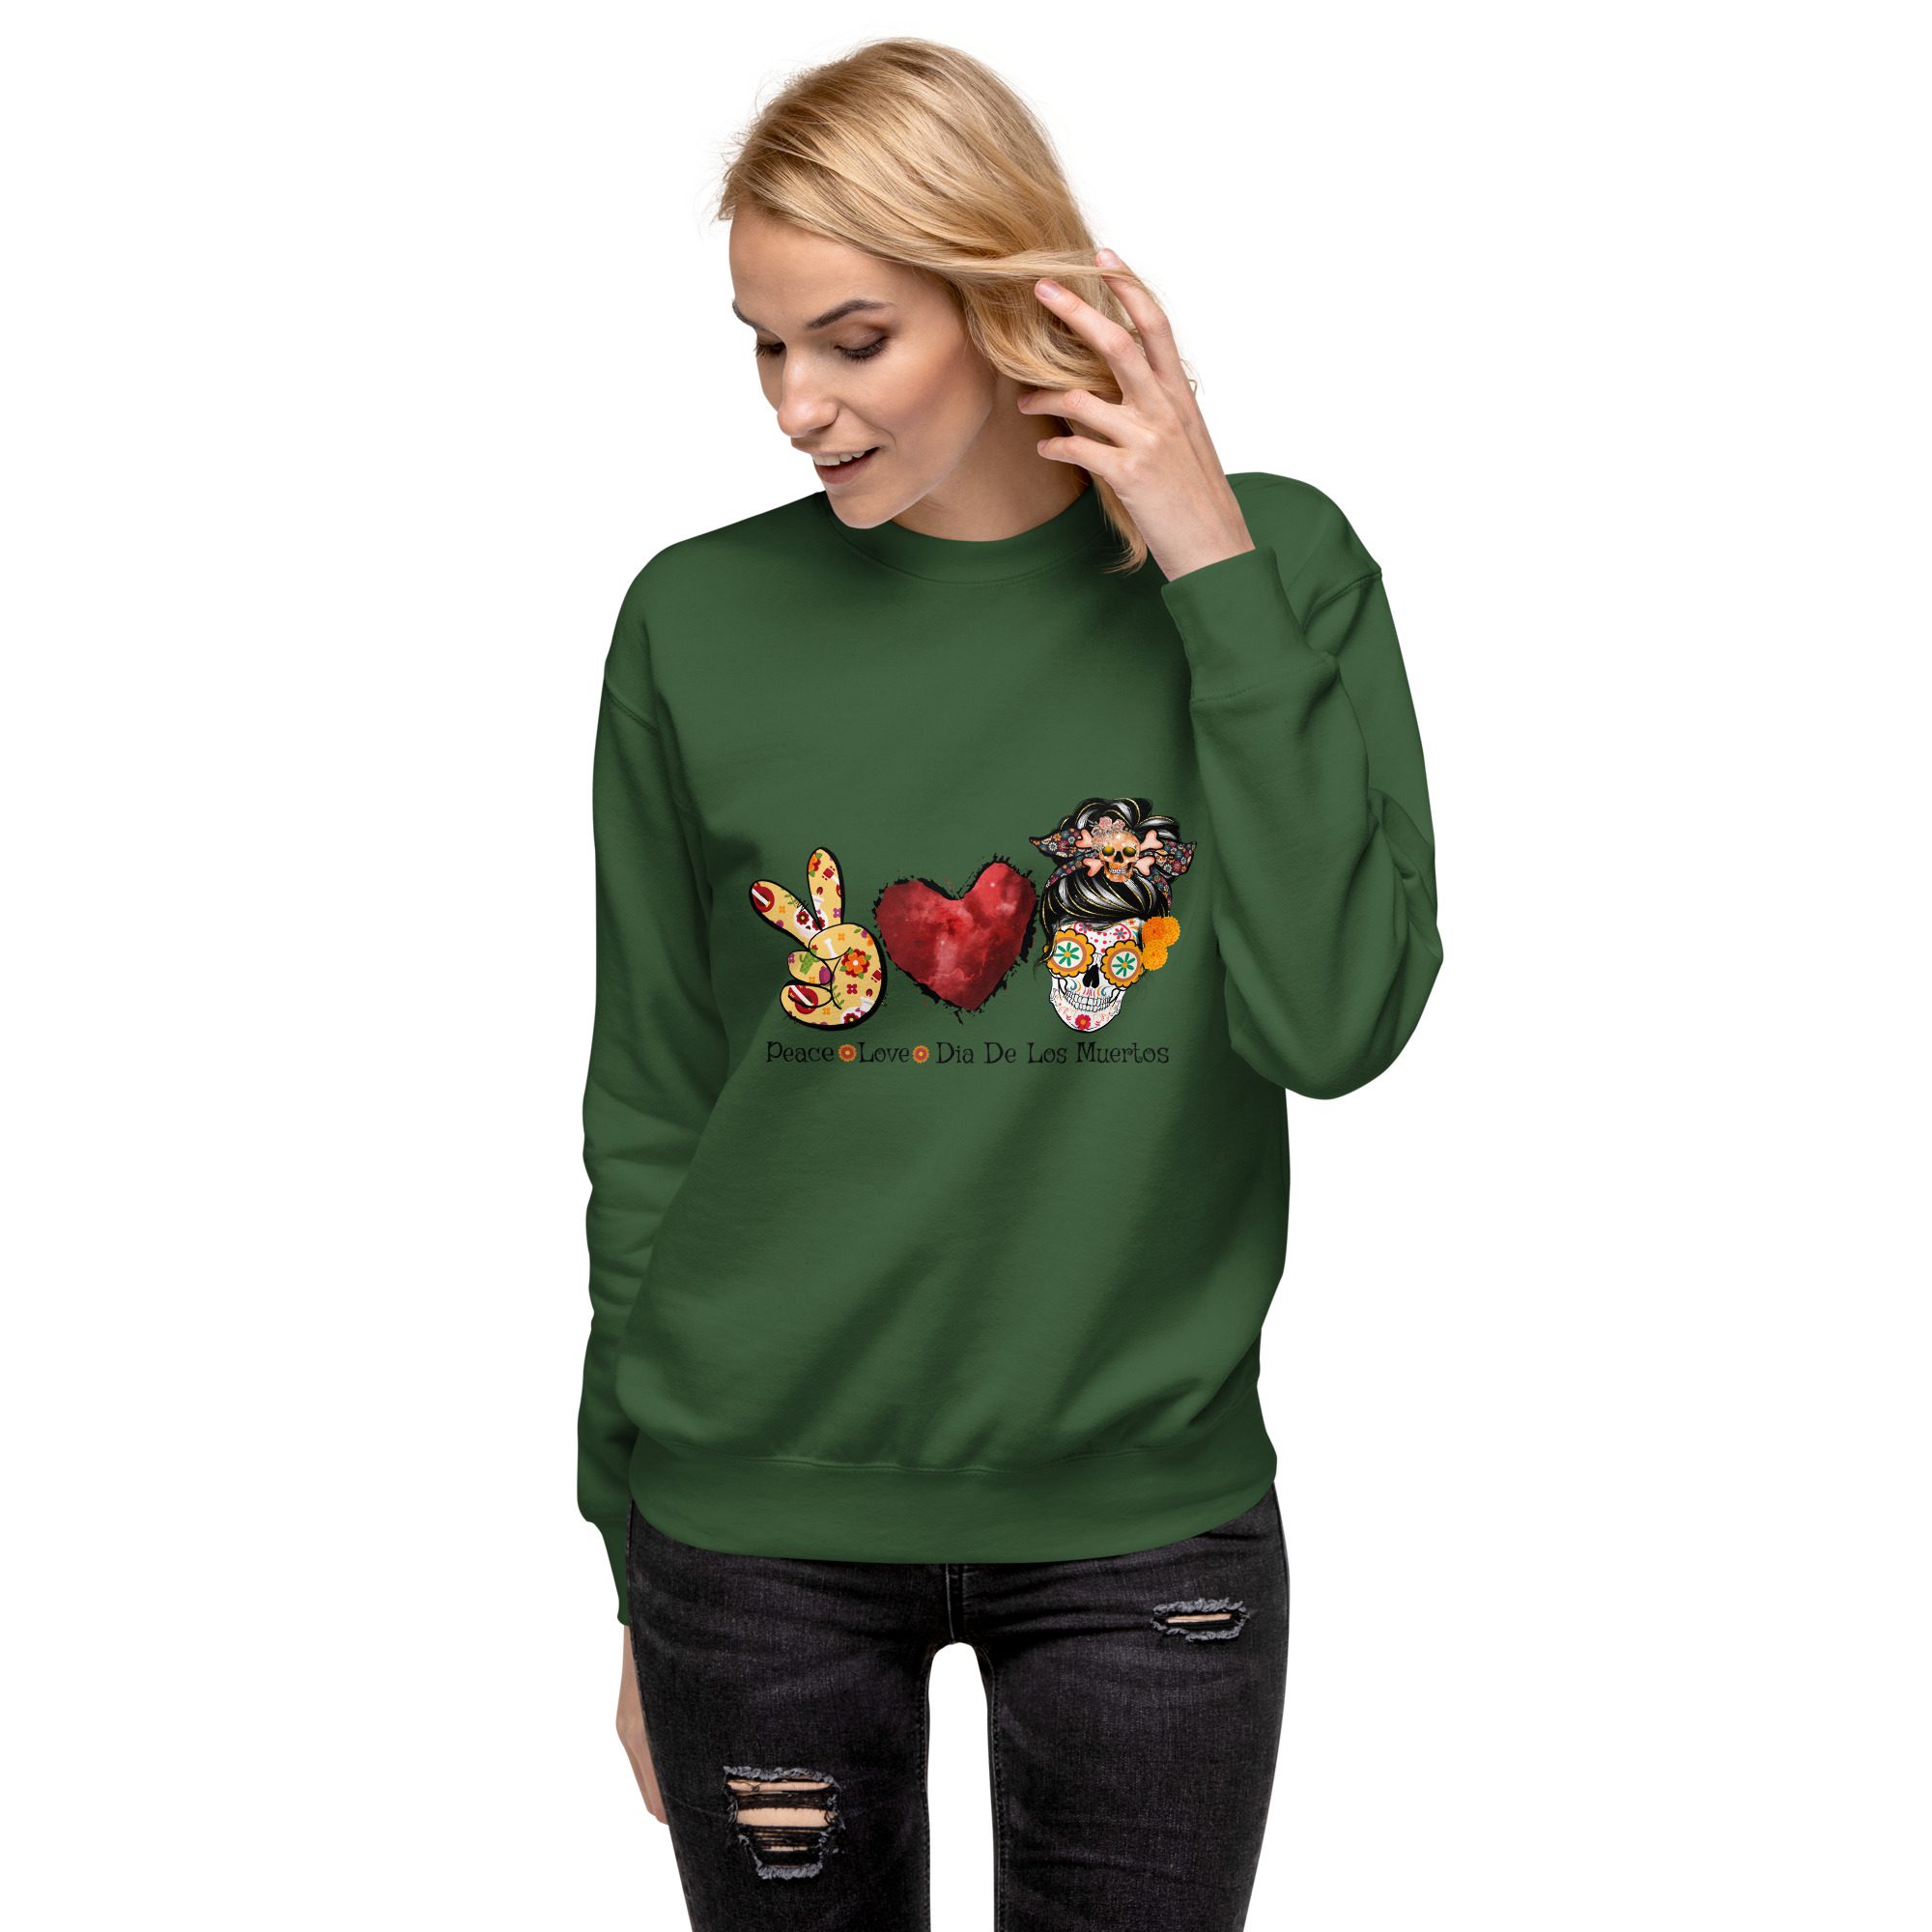 unisex premium sweatshirt forest green front 653665da25a4c